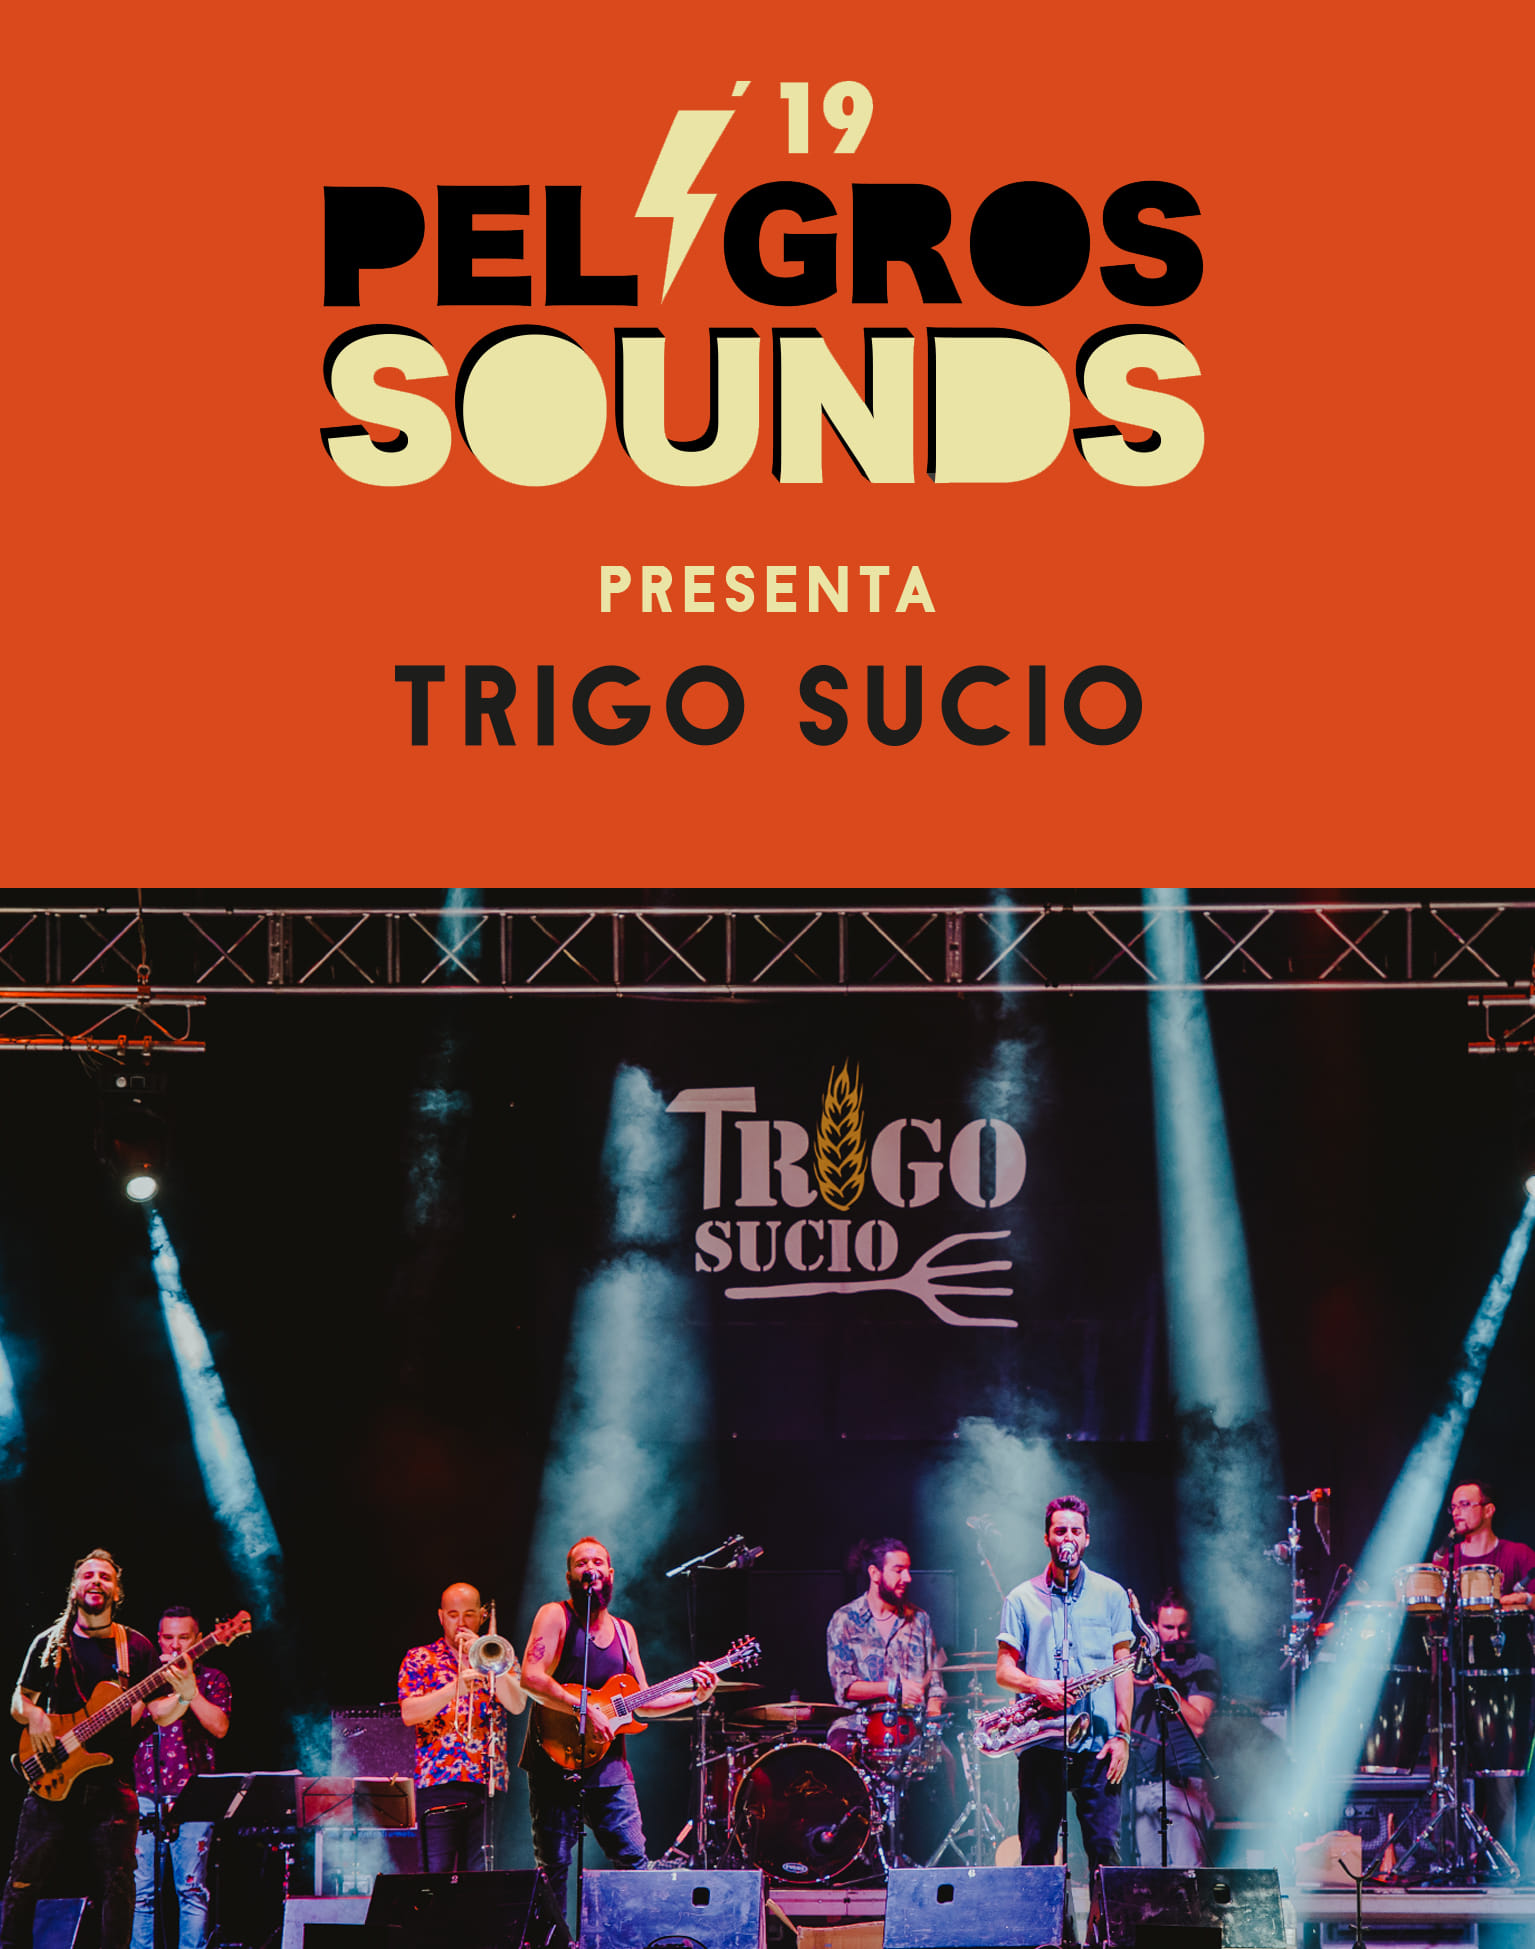 2019- Trigo Sucio en el festival peligros sounds